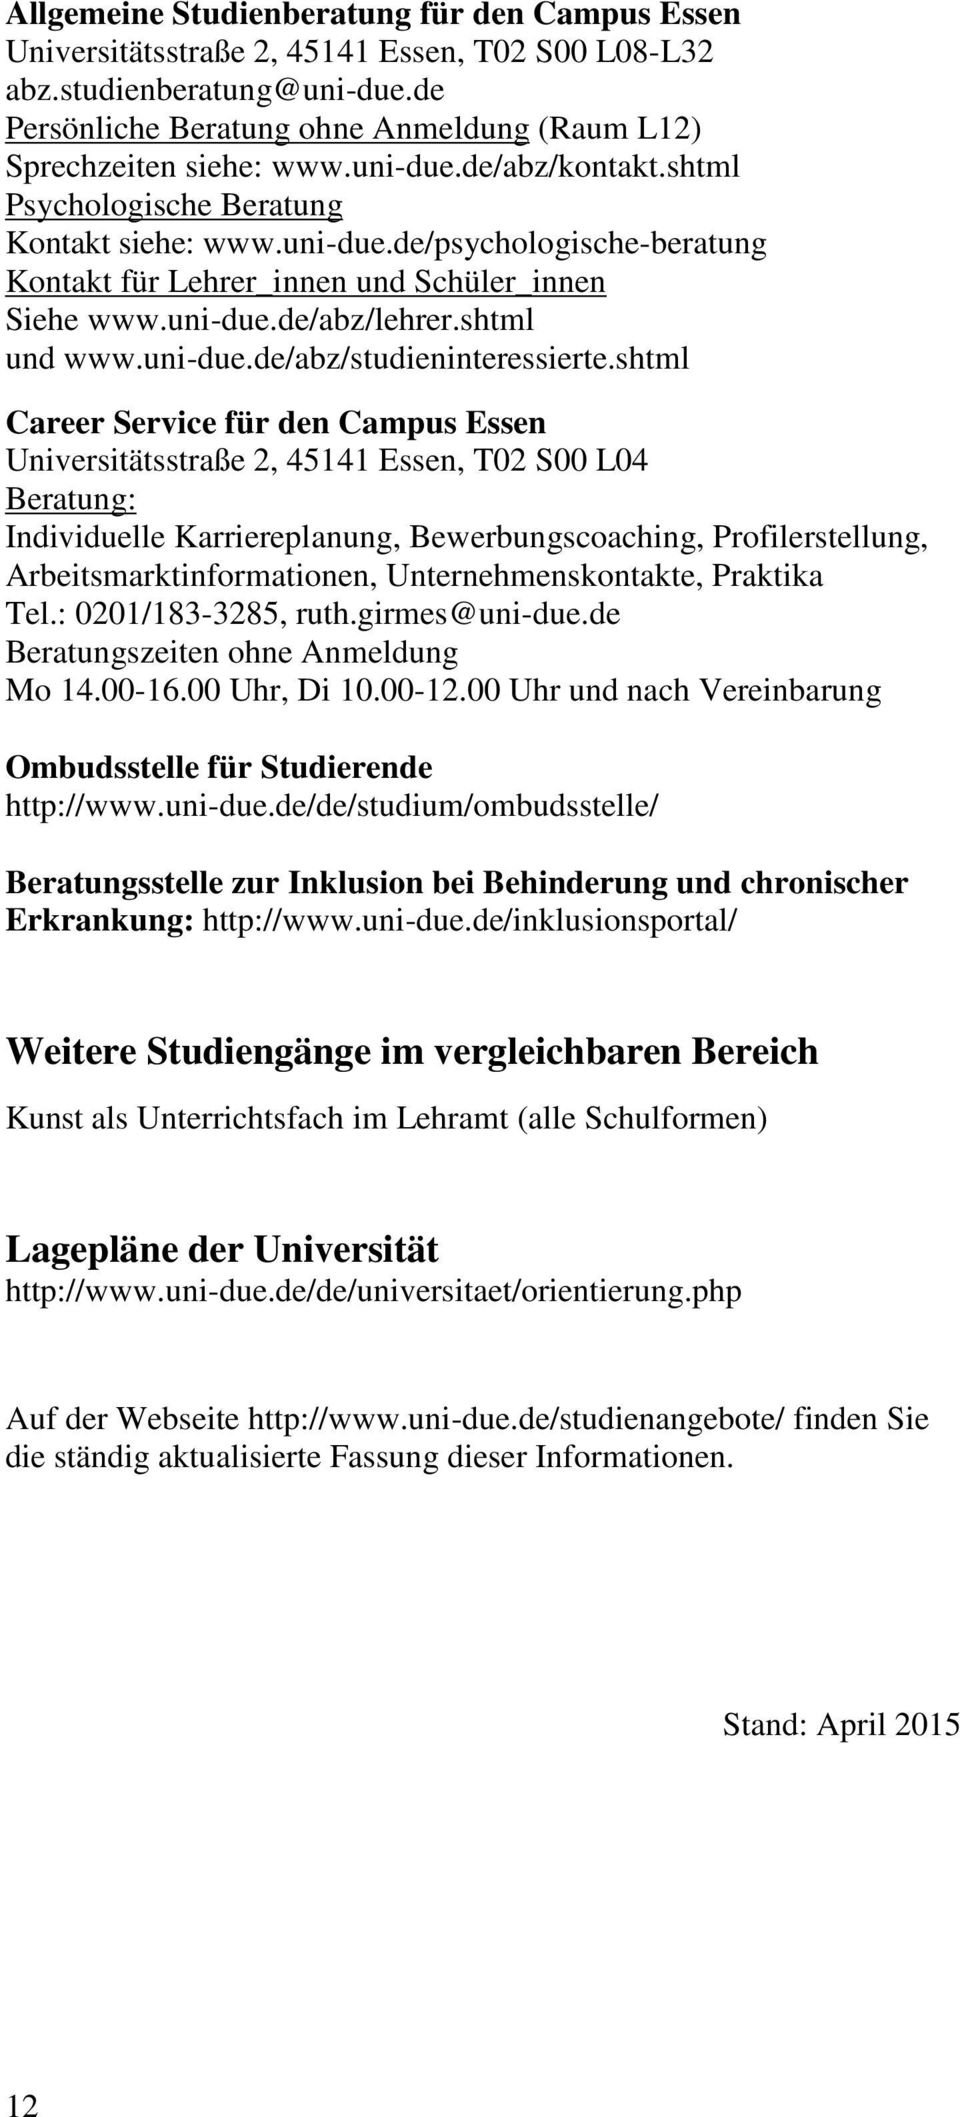 uni-due.de/abz/lehrer.shtml und www.uni-due.de/abz/studieninteressierte.